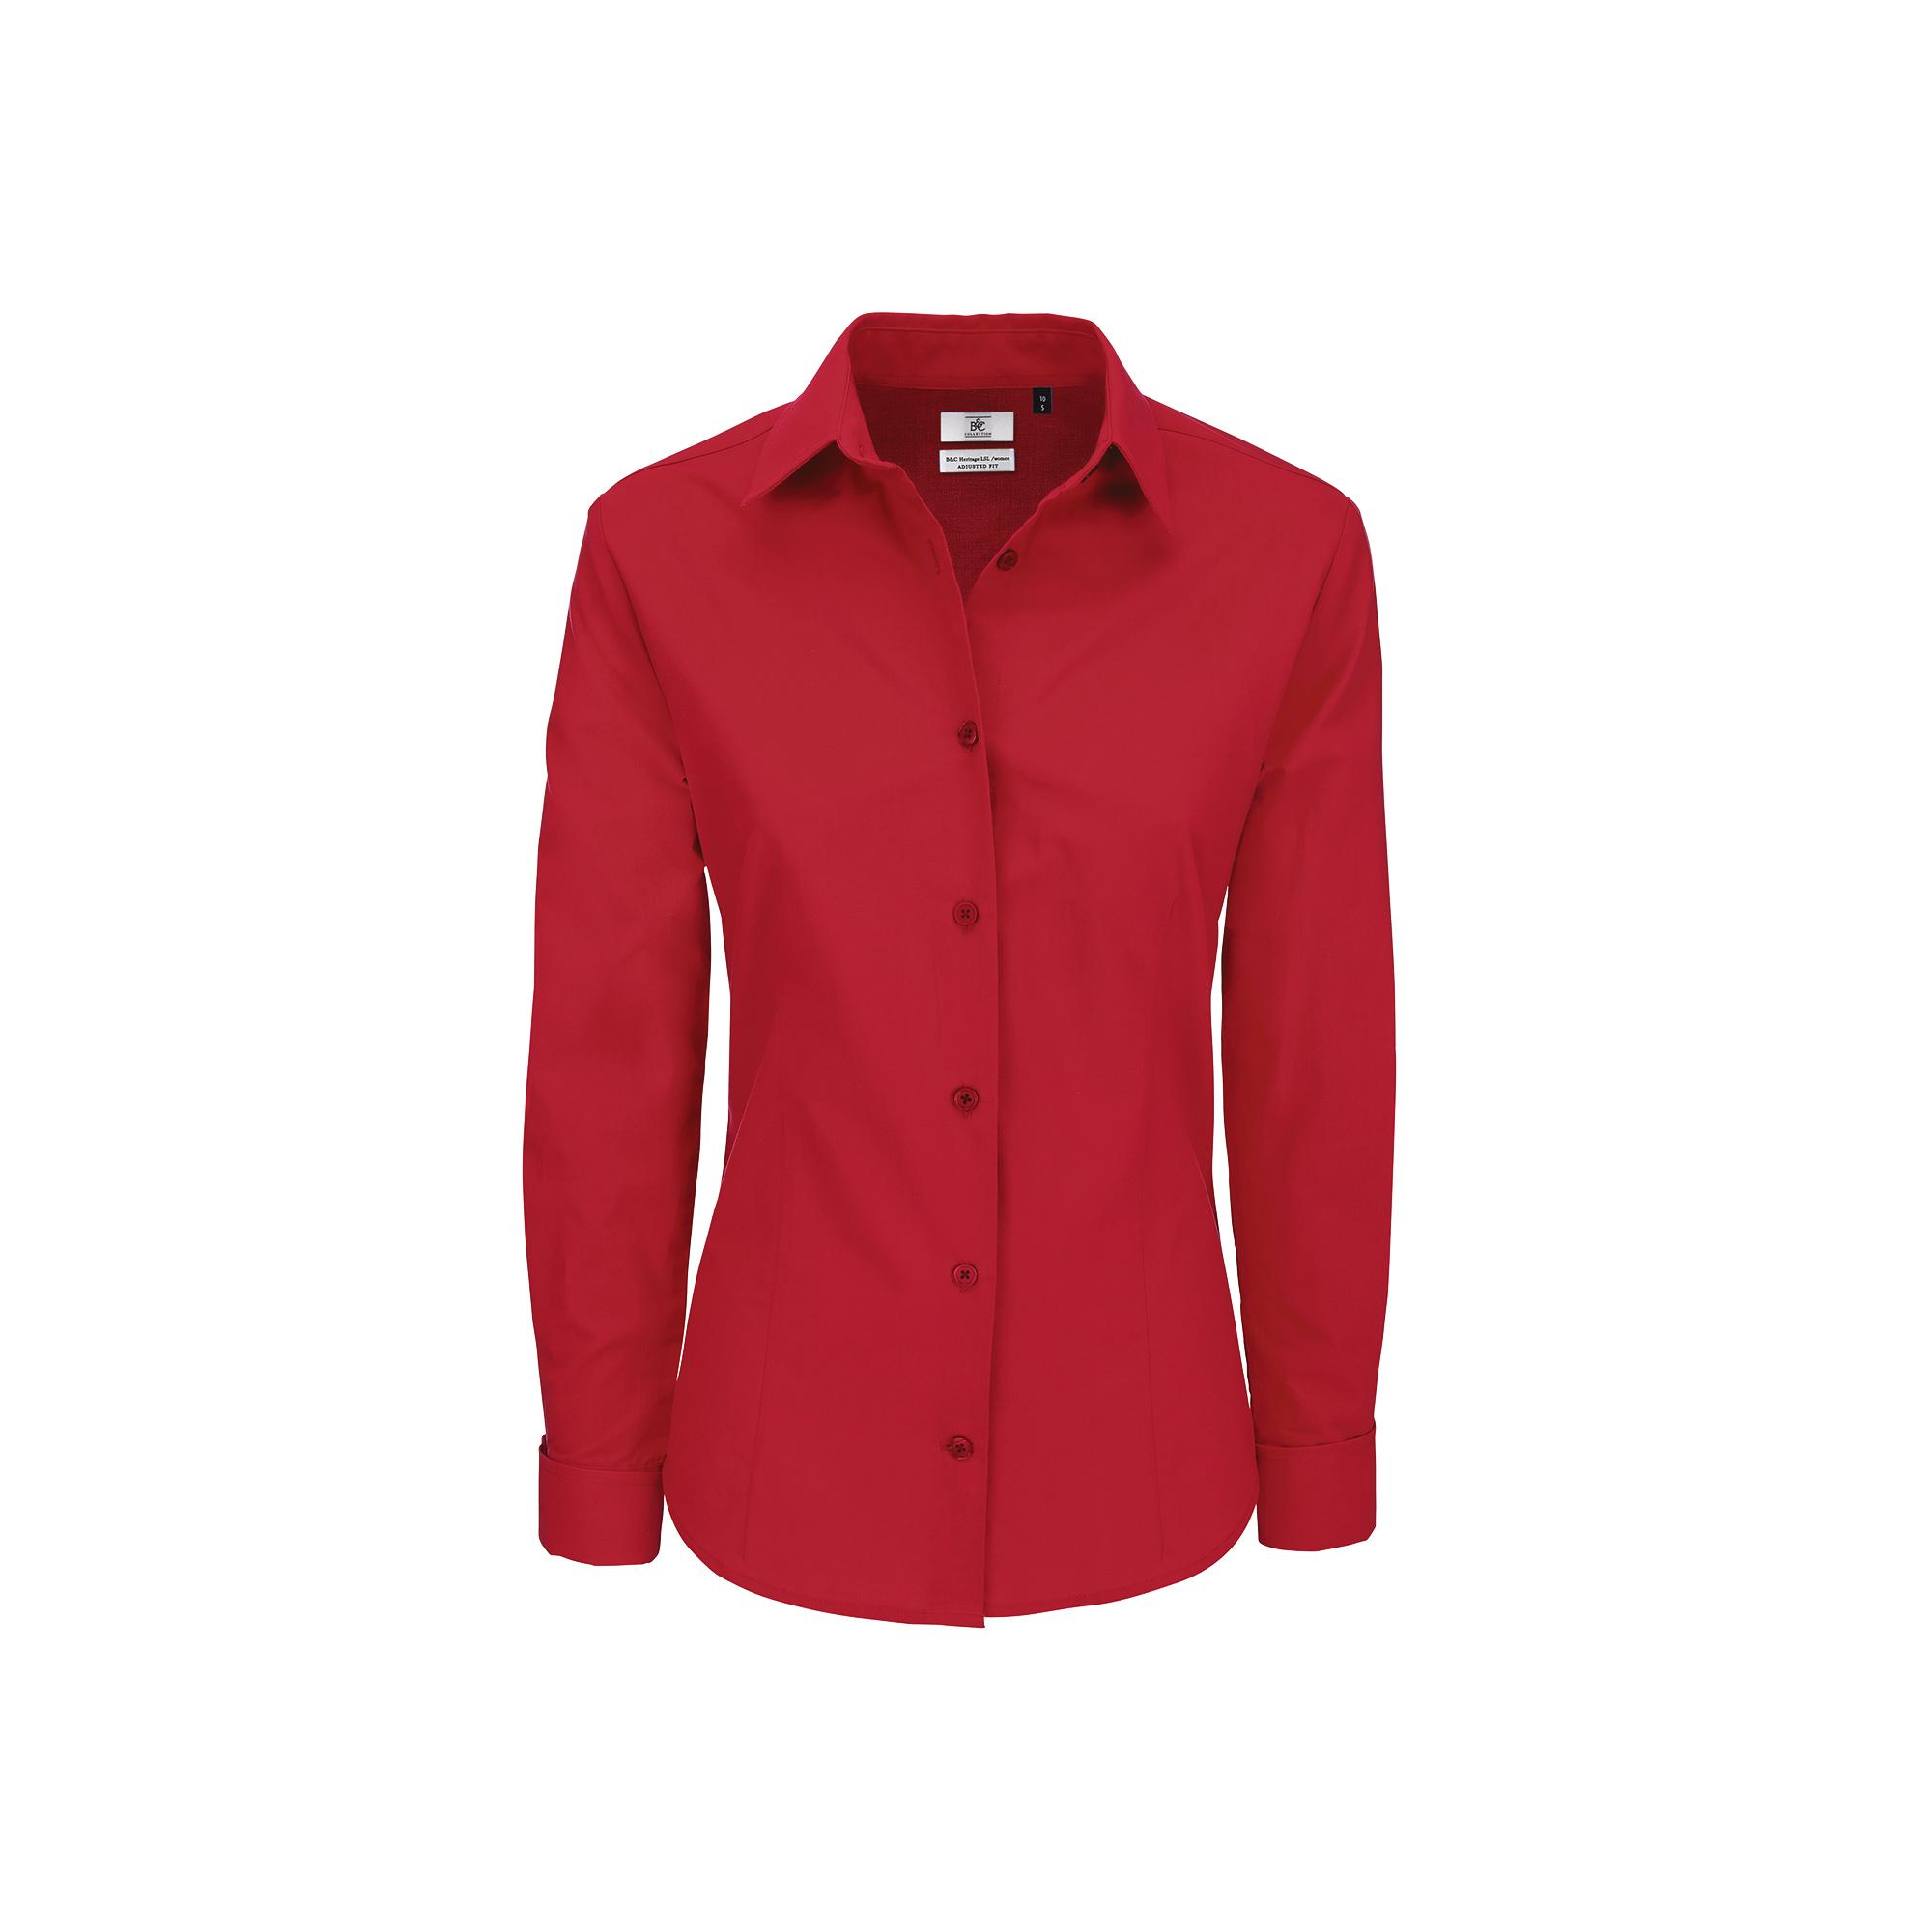 Рубашка женская с длинным рукавом Heritage LSL/women, цвет темно-красный, фото 1